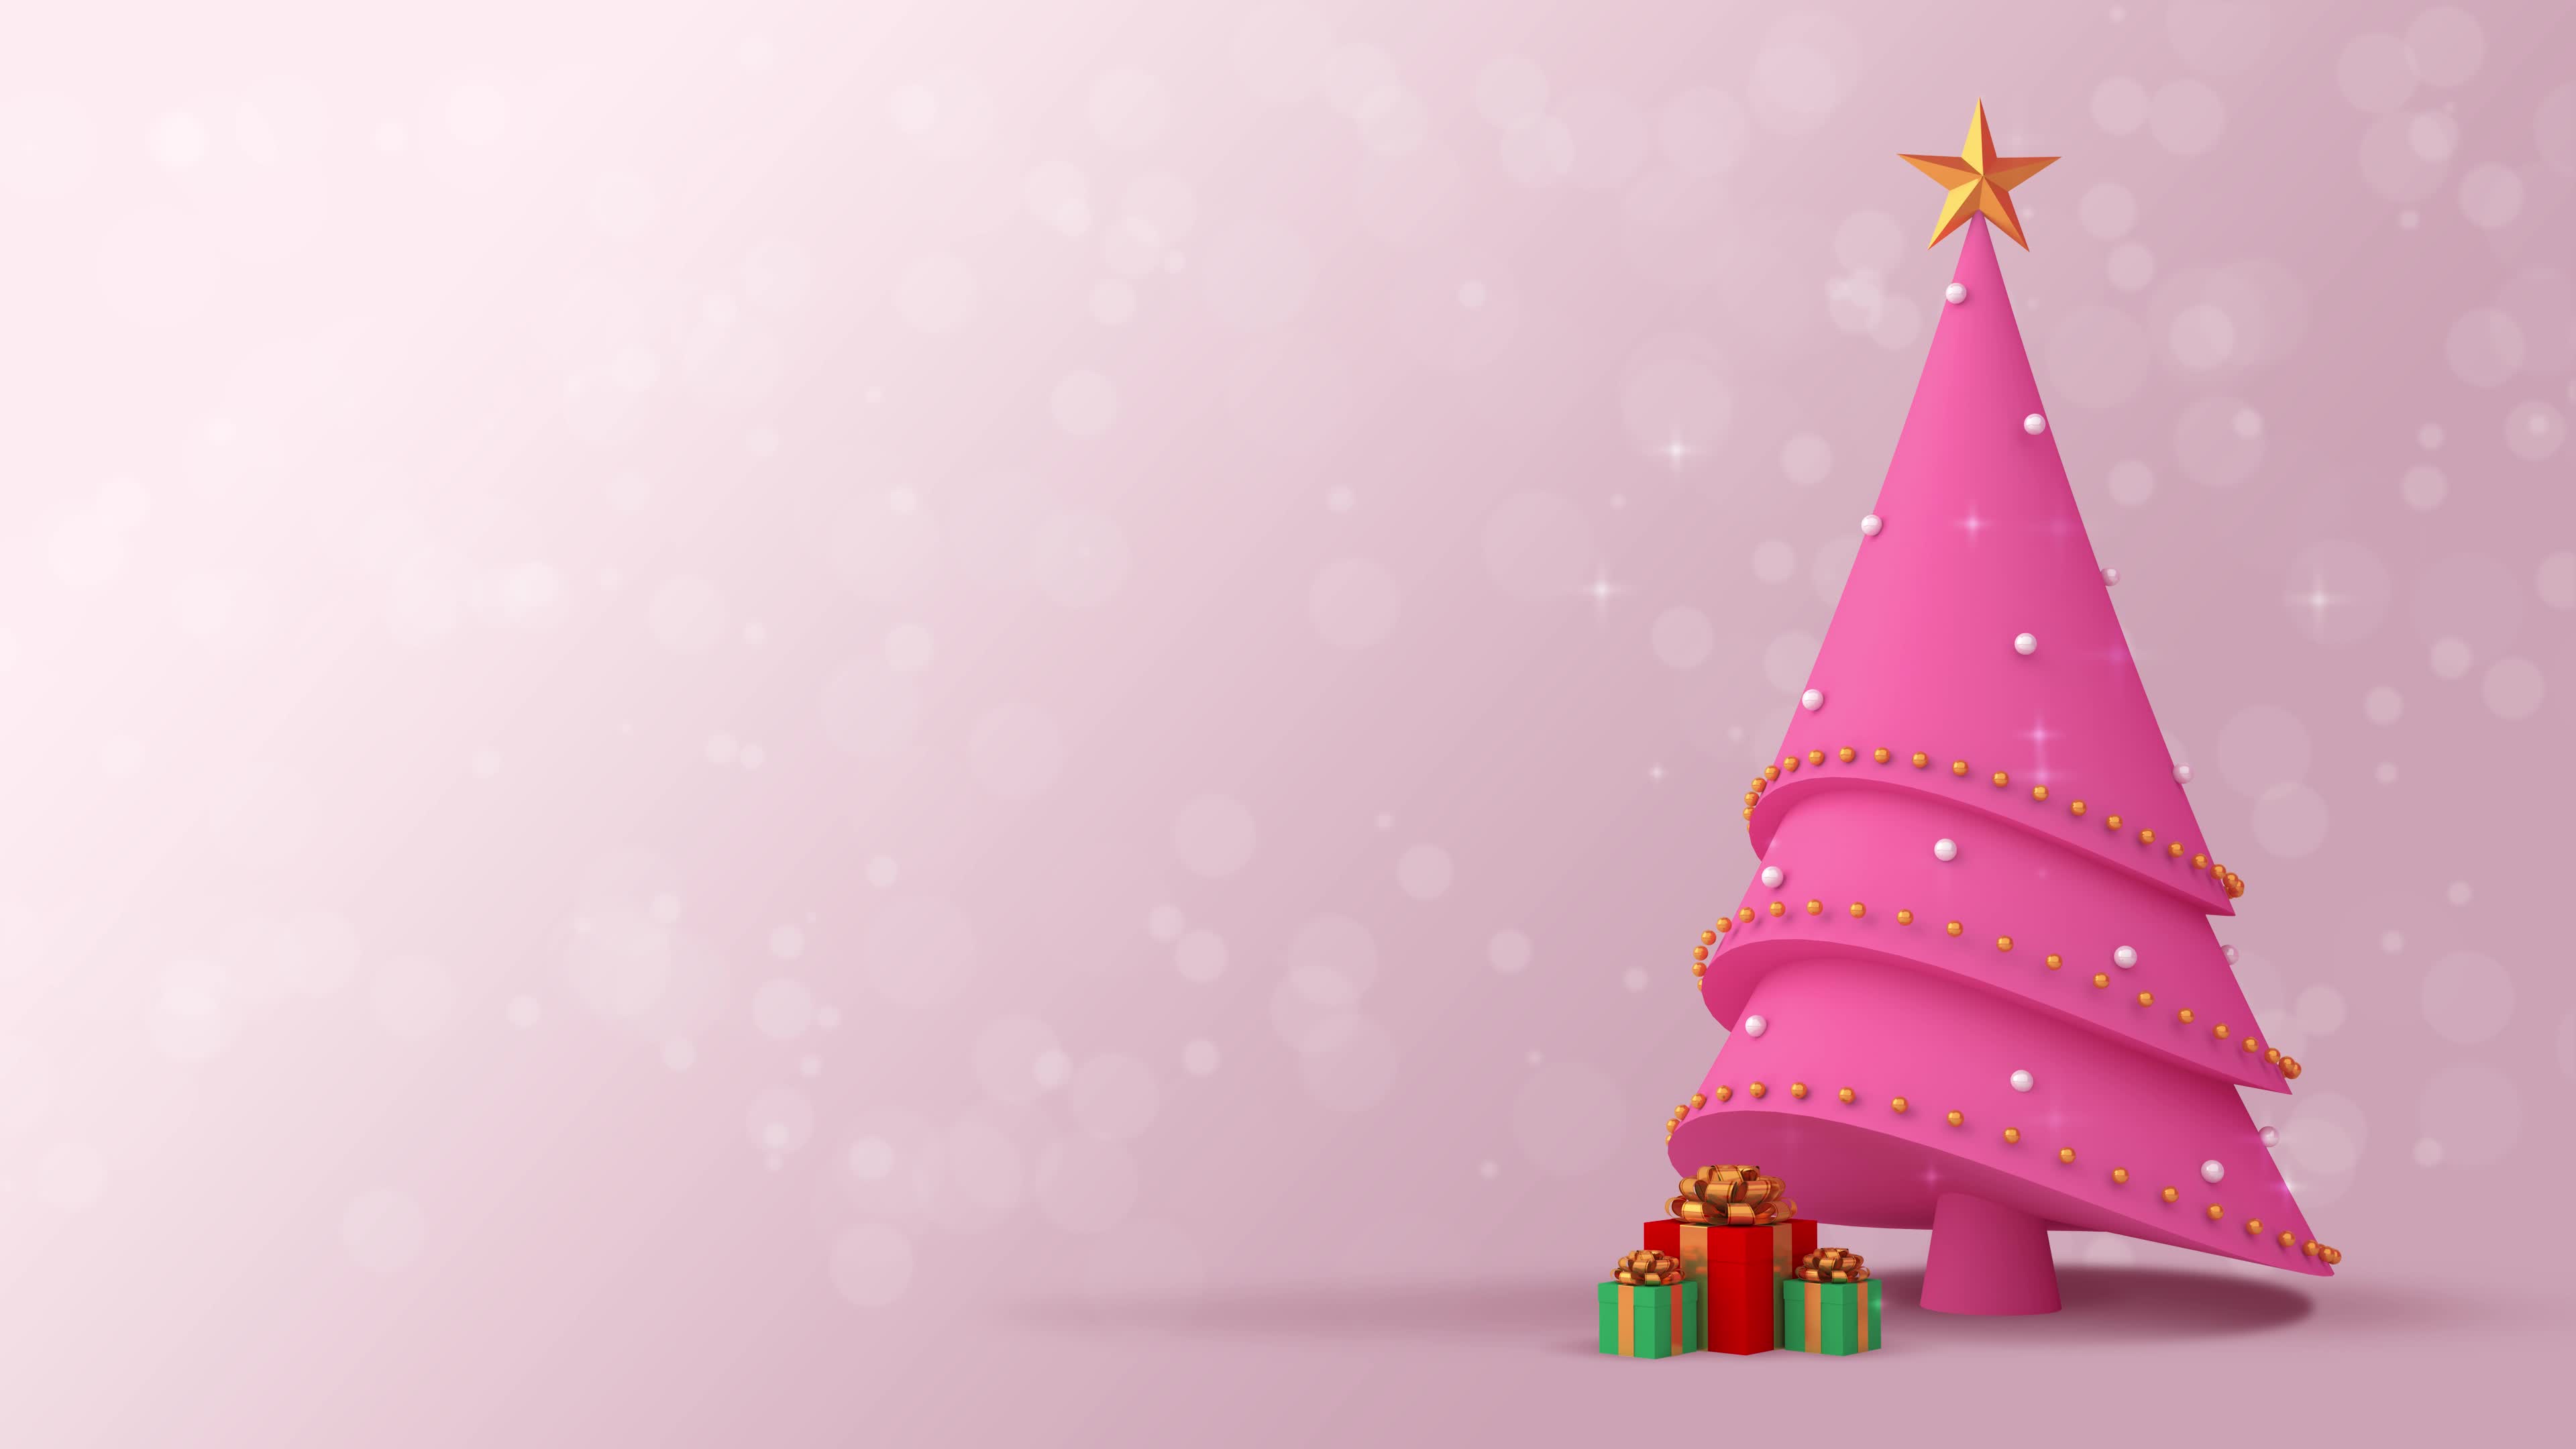 Giáng Sinh hồng là một lựa chọn tuyệt vời để mang đến không khí ấm áp và ngọt ngào cho mùa lễ này. Hãy xem hình ảnh để cảm nhận sức hút của những thỏi son hồng ấm áp, phù hợp với không gian trang trí Giáng Sinh của bạn.